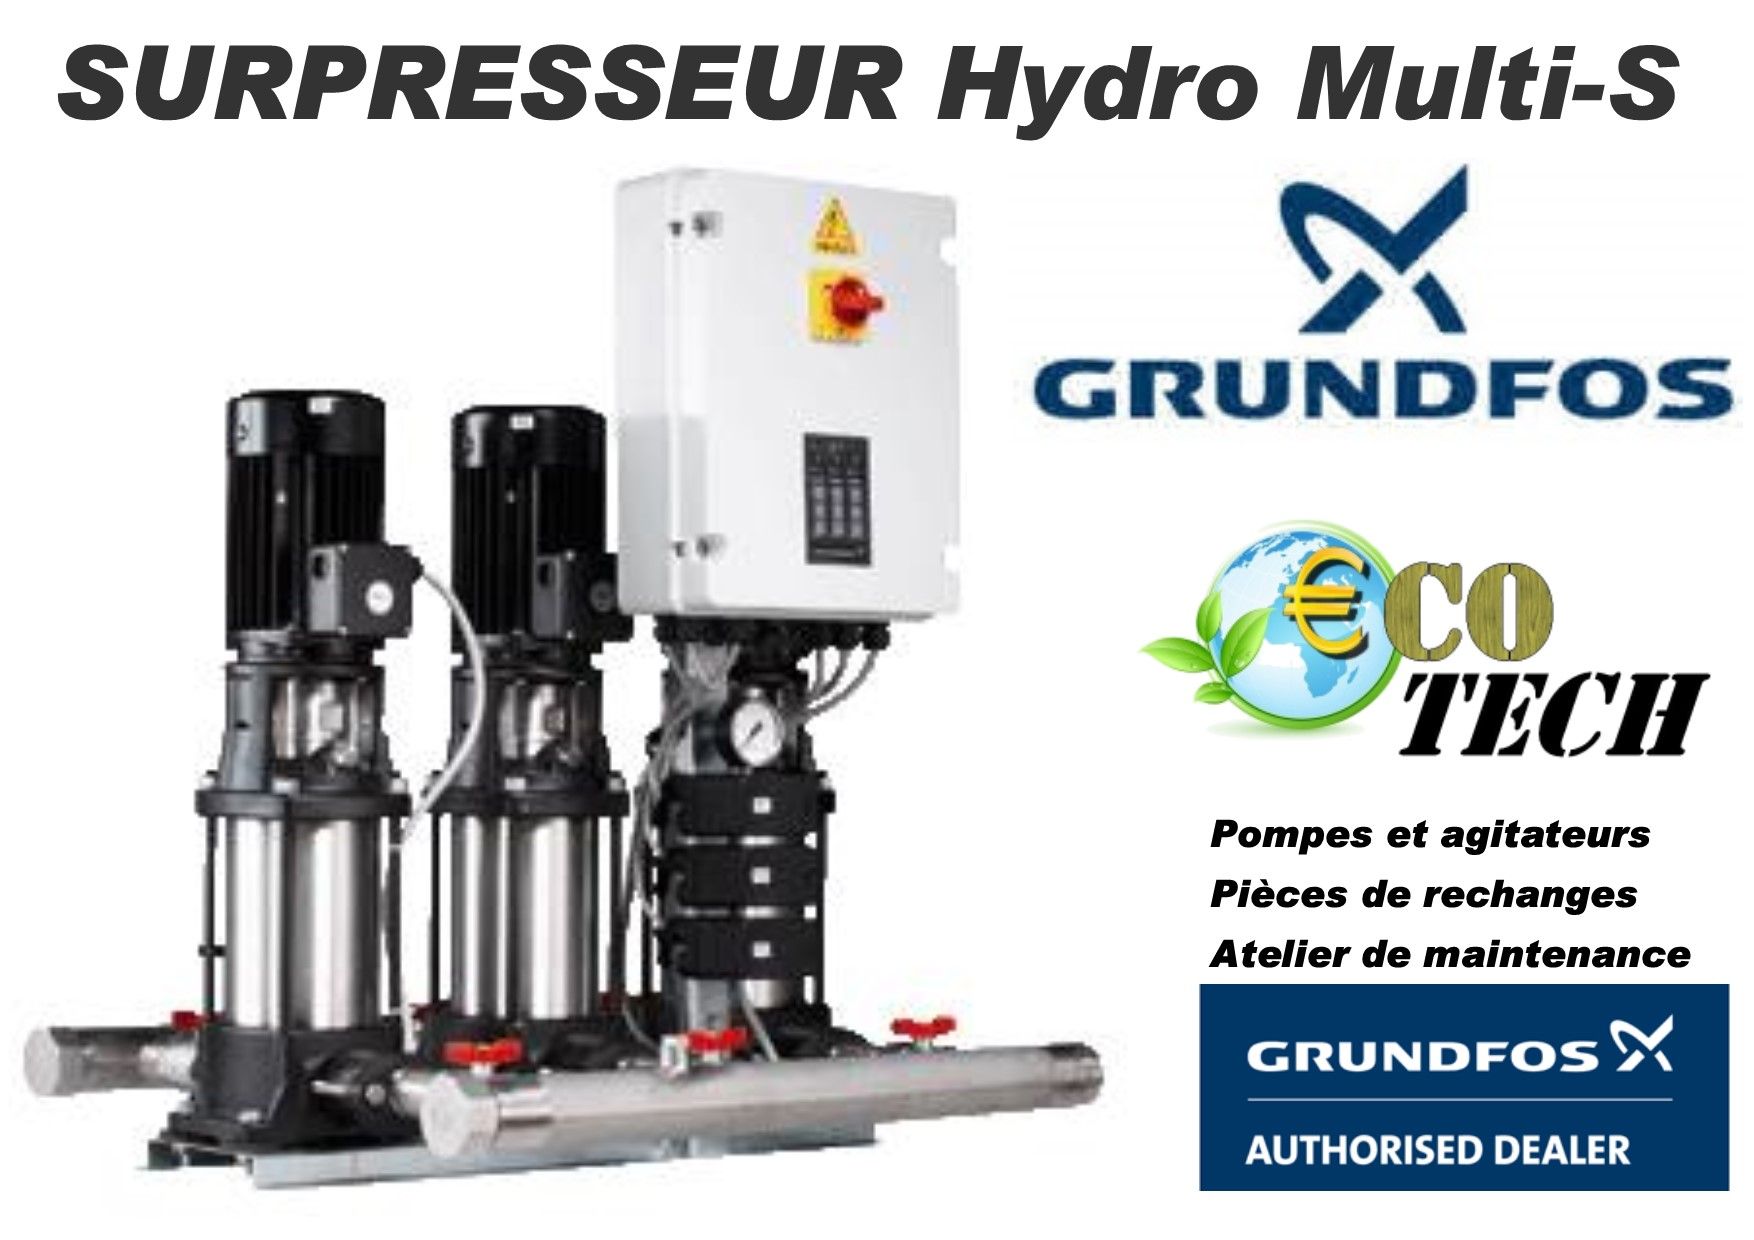 Surpresseur pompe grundfos hydro multi-s distributeur france normandie_0